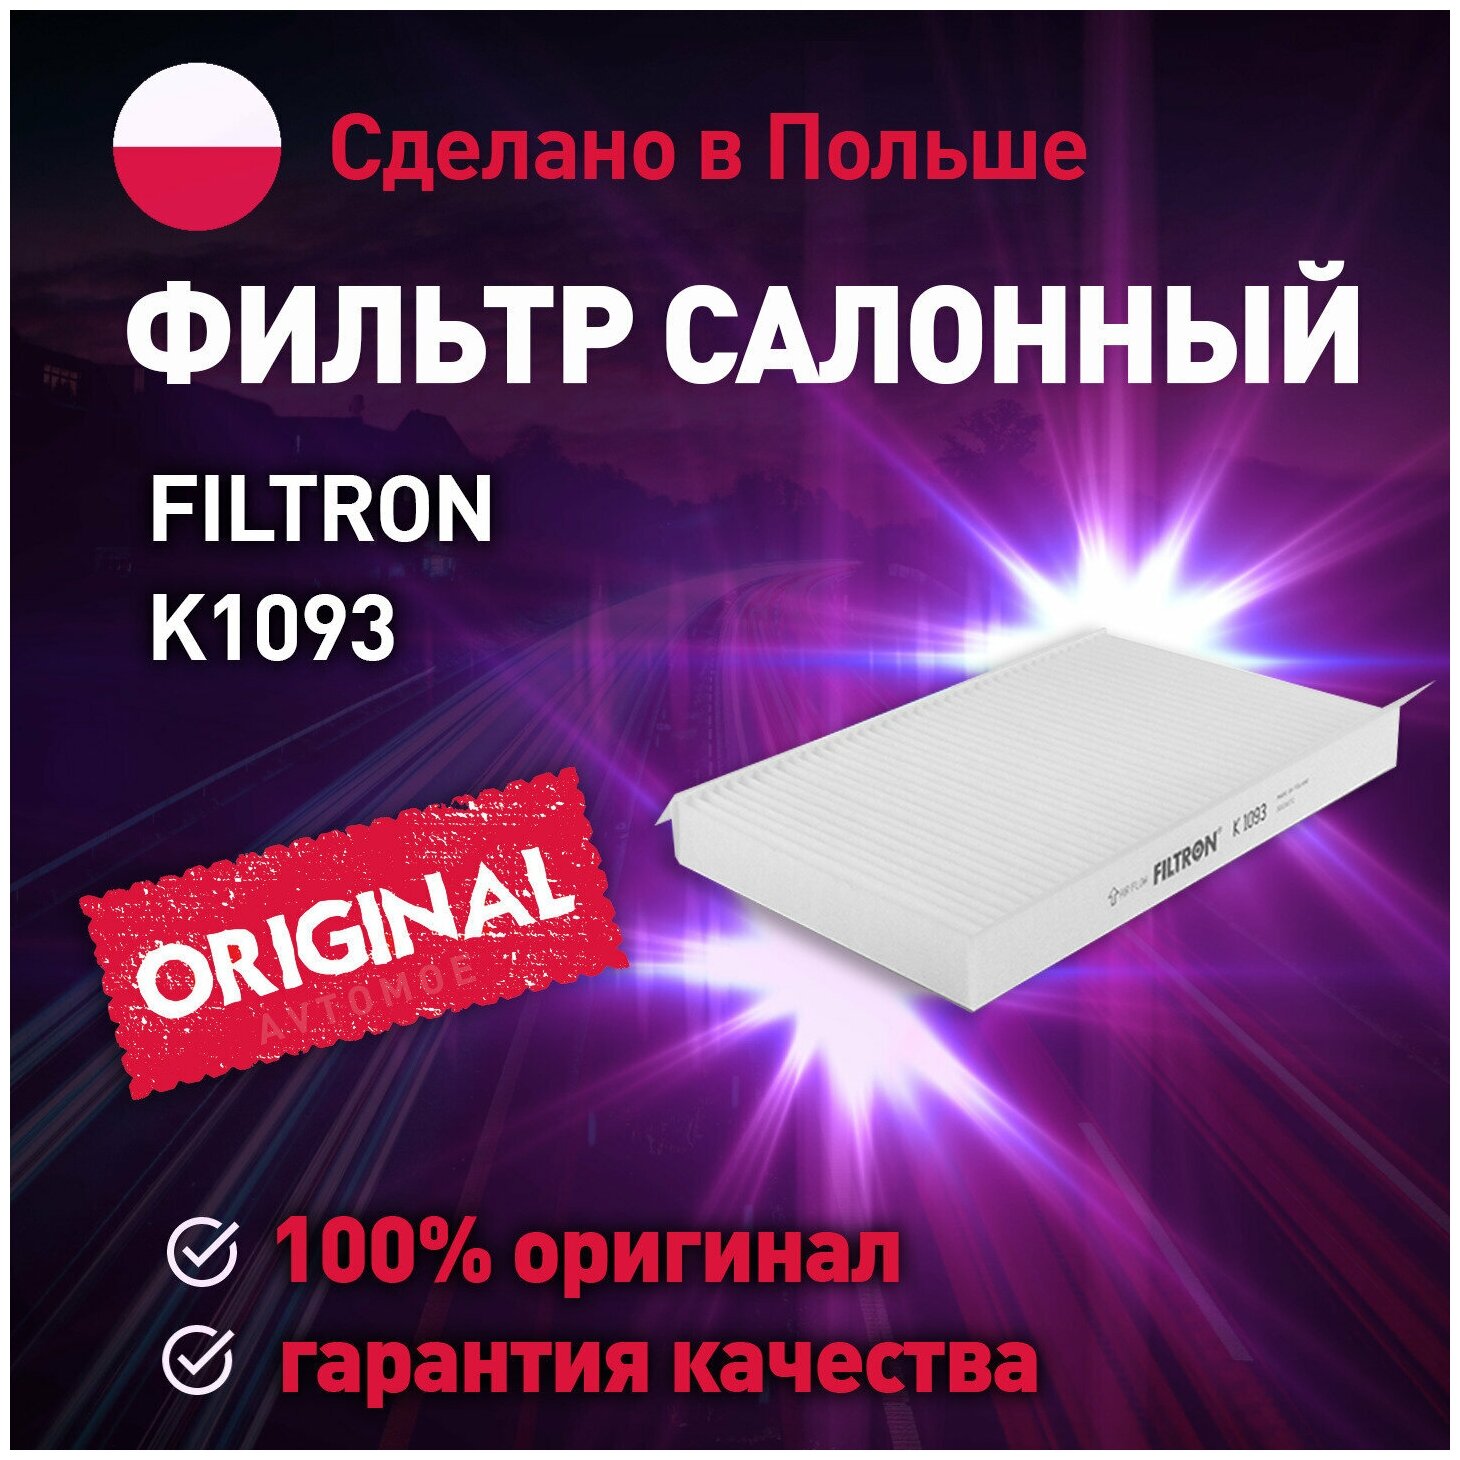 Фильтр салонный K1093 FILTRON для Citroen C3, C4, Peugeot 307, 408 / Фильтрон для Ситроен С3, С4, Пежо 307, 408